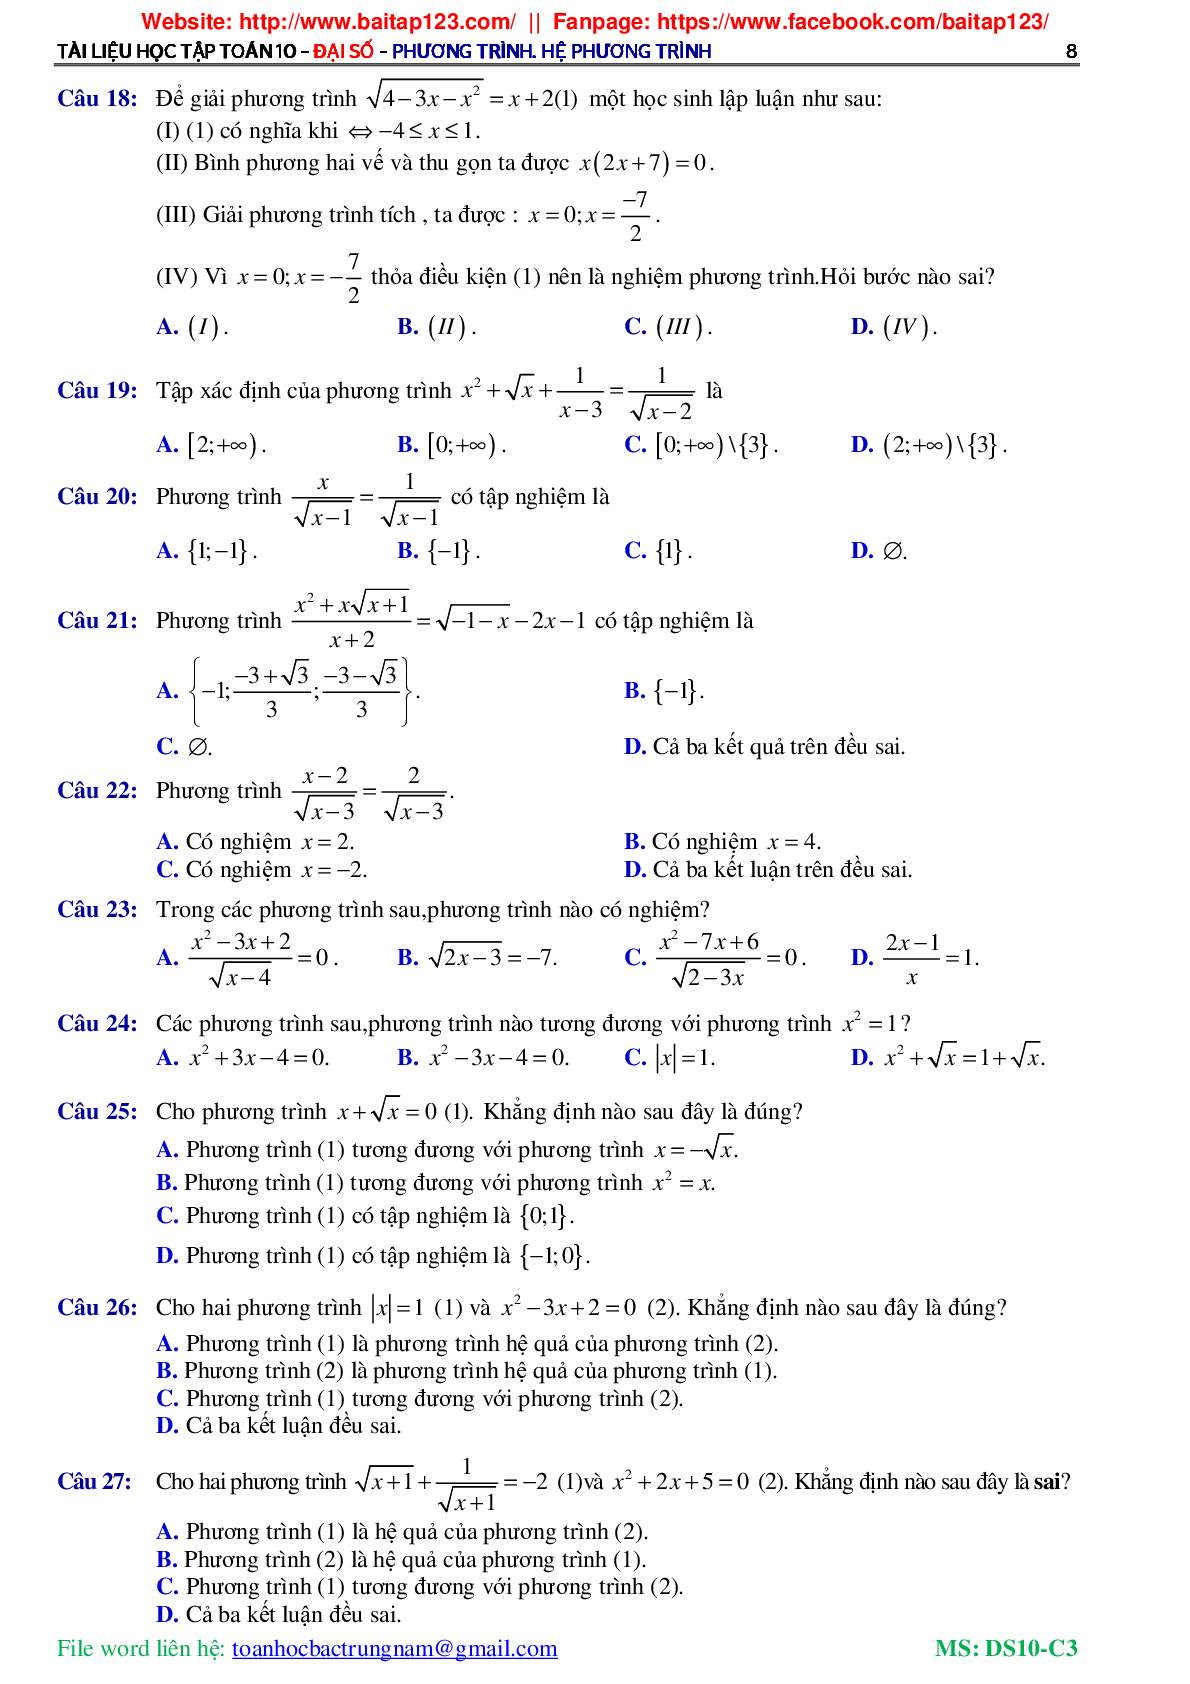 Các dạng toán phương trình và hệ phương trình môn Toán lớp 10 (trang 9)